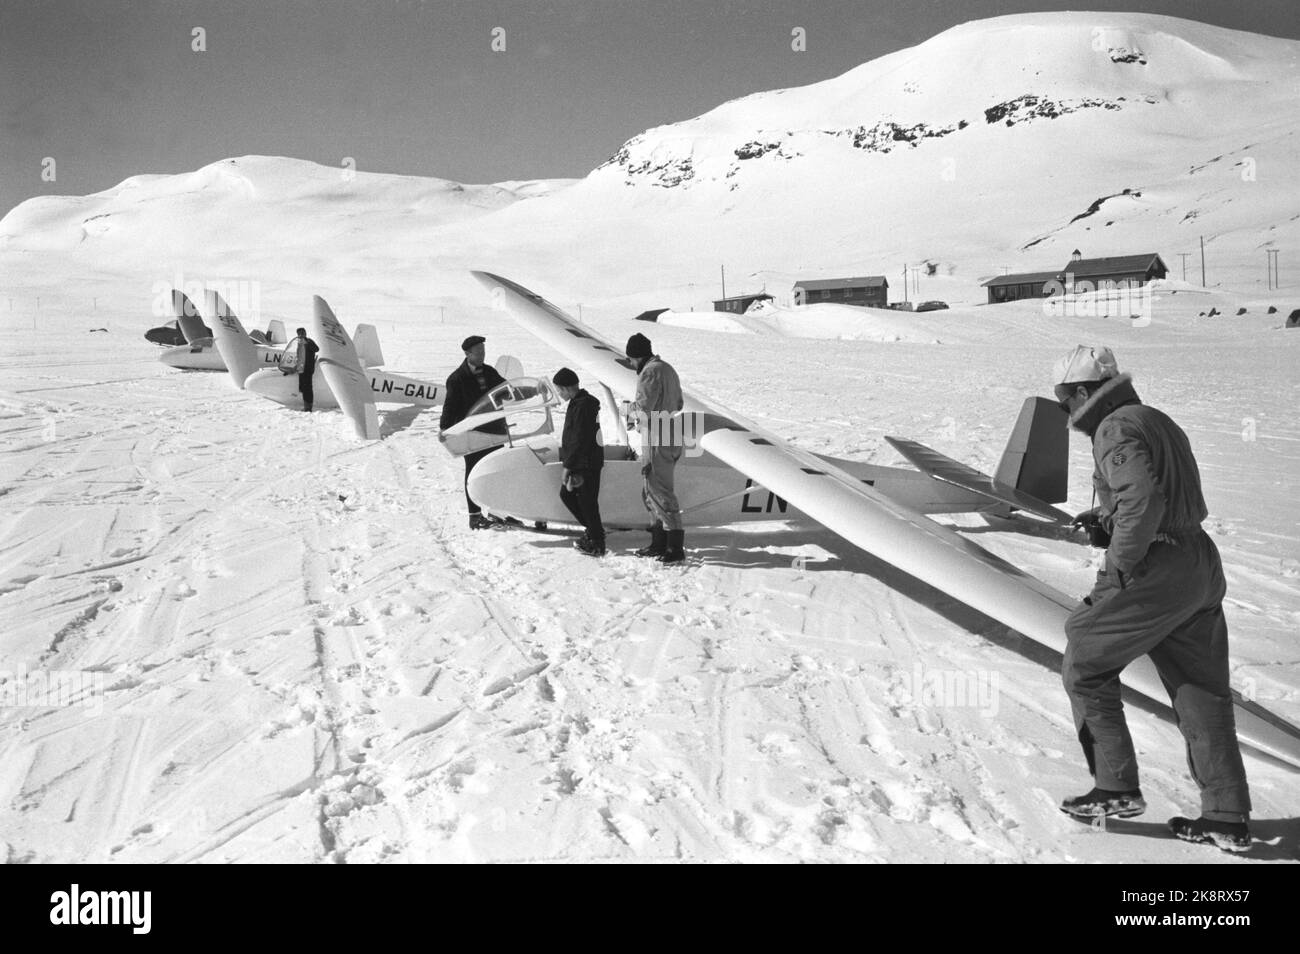 Eidsbugarden, Jotunheimen, 6. Mai 1961. Fünf Segelflugzeuge genießen sich in der Bergwelt. Zwei von ihnen landen auf dem Uranos-Gletscher, als die ersten Segelflugzeuge jemals auf einem Gletscher landeten. Als erster landet der dänische Möbelpolsterer Robert Nielsen aus Silkeborg. Der Norweger Bakkasserer, Bjarne Bergsund landet auf Platz 2. Die Segelflugzeuge warten darauf, hochgezogen zu werden. Foto; Ivar Aaserud / NTB Stockfoto